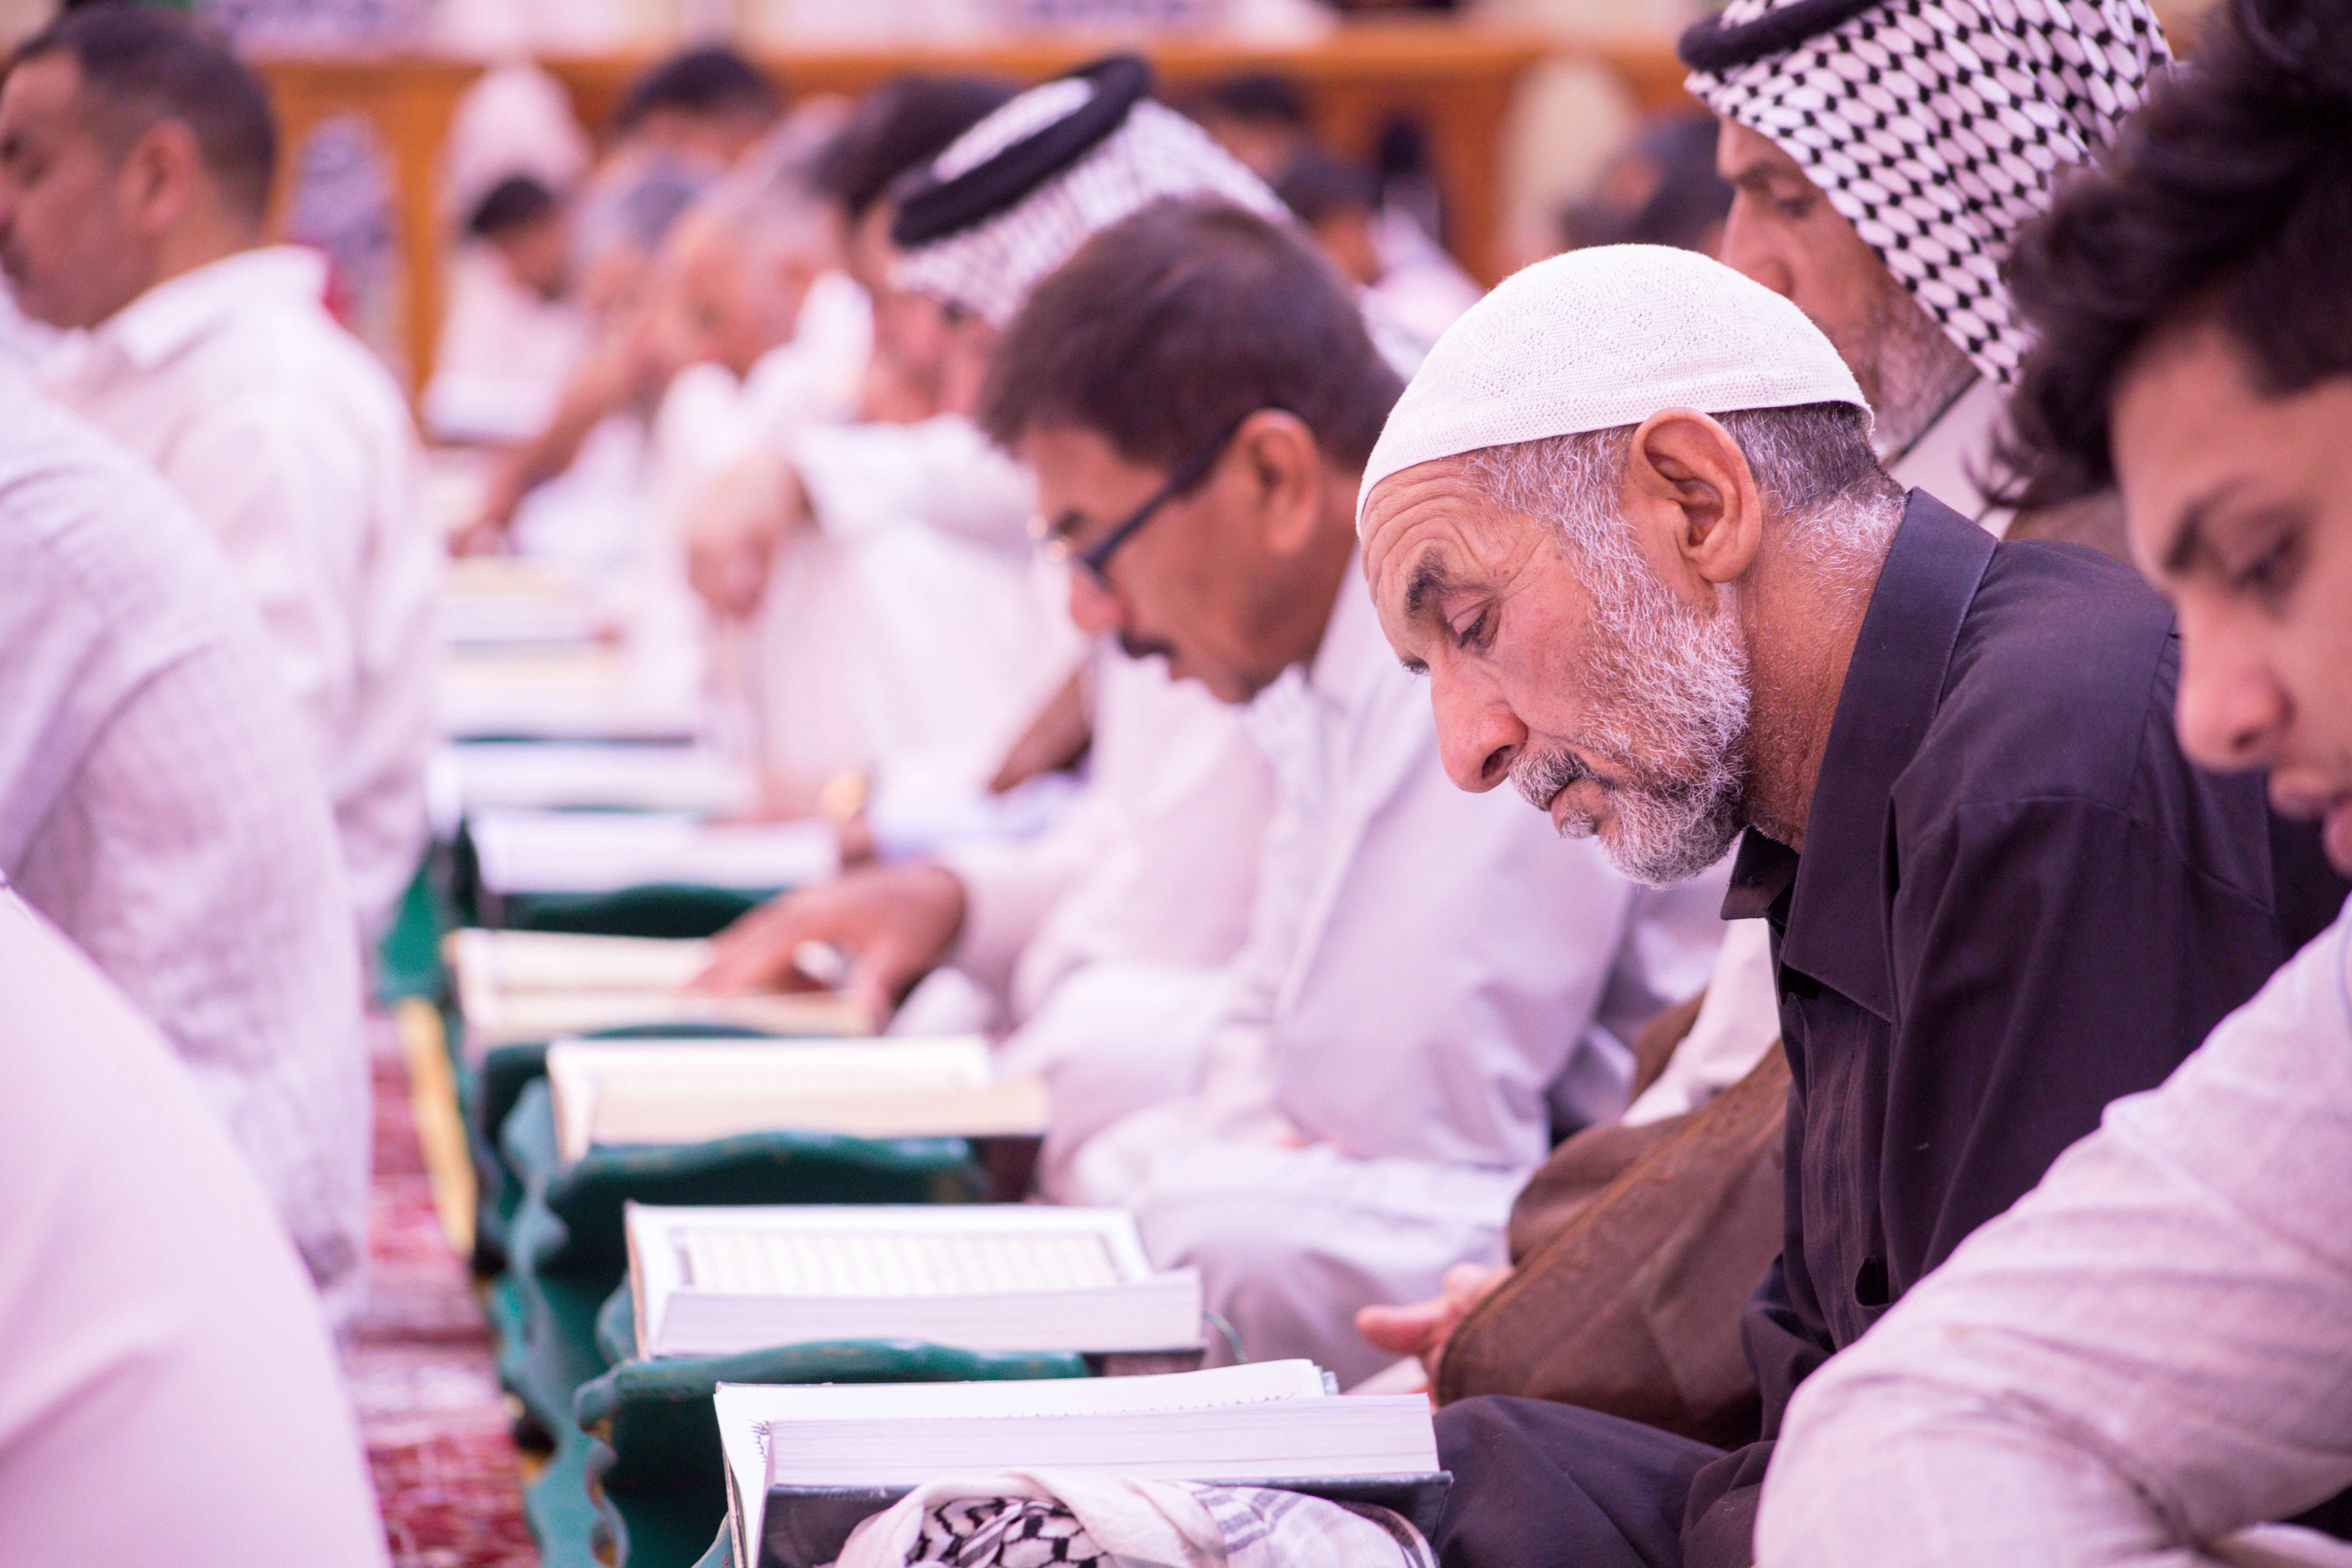 في رحاب الصحن العبّاسي المطهر معهد القرآن الكريم يقيم الختمة القرآنيّة الرمضانيّة المرتلة